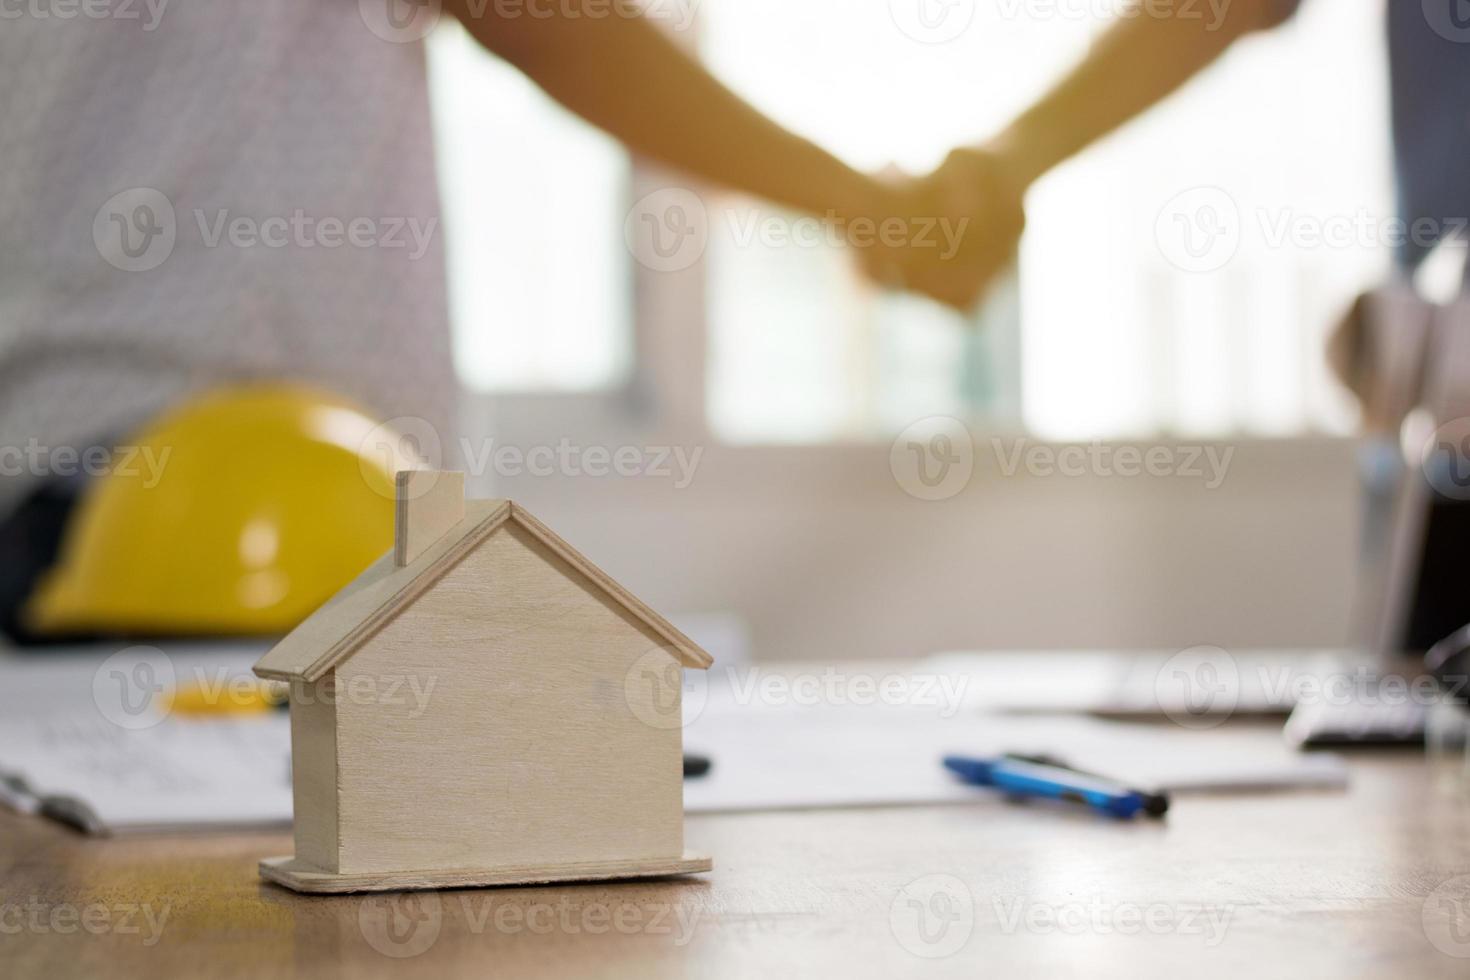 due persone si stringono la mano e costruiscono una casa foto